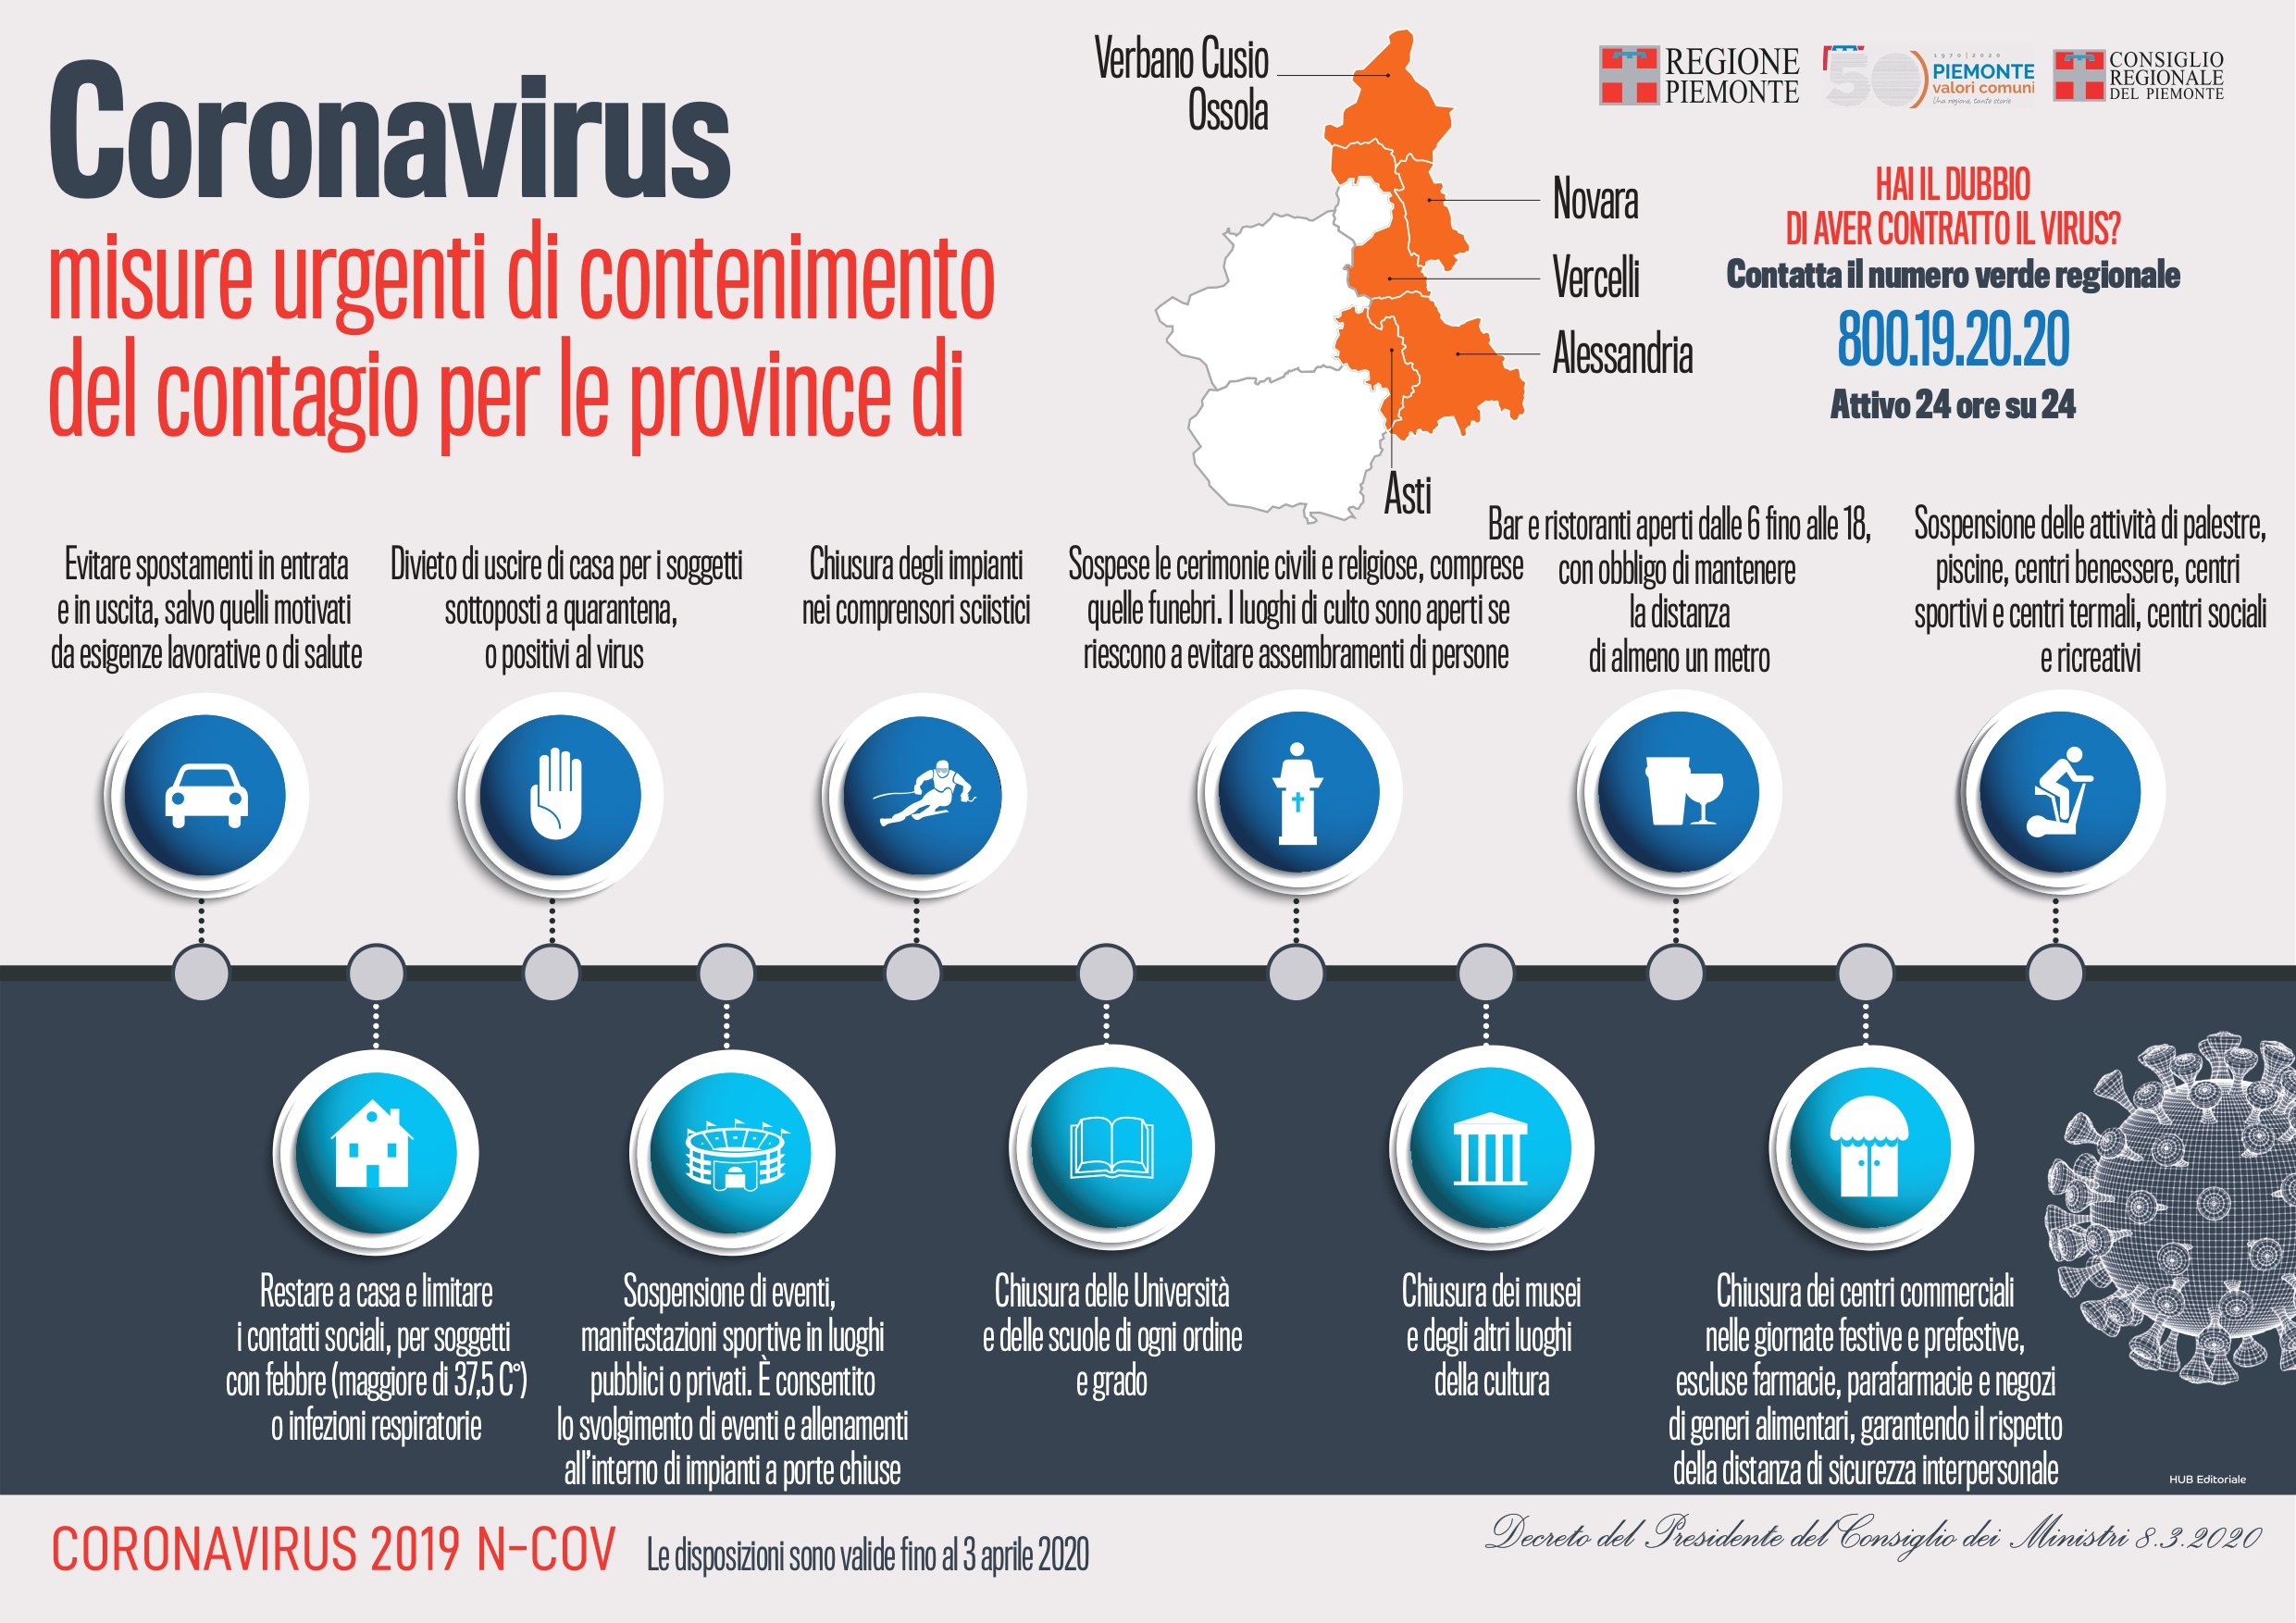 Le regole del Decreto anticoronavirus spiegate in una immagine